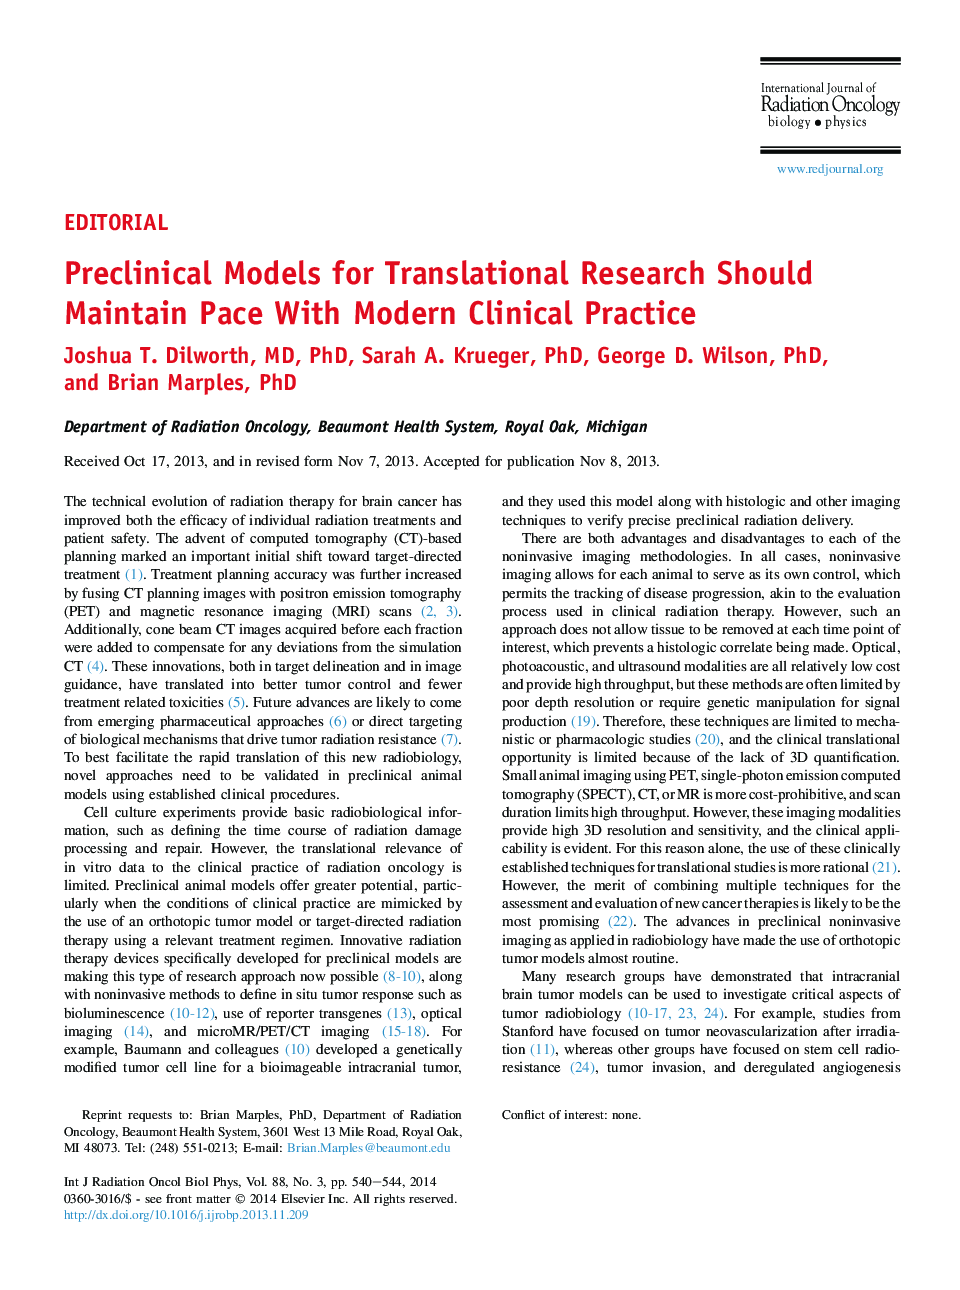 مدلهای پیشکلامی برای تحقیقات ترجمه باید با تدابیر بالینی مدرن سازگاری داشته باشند 